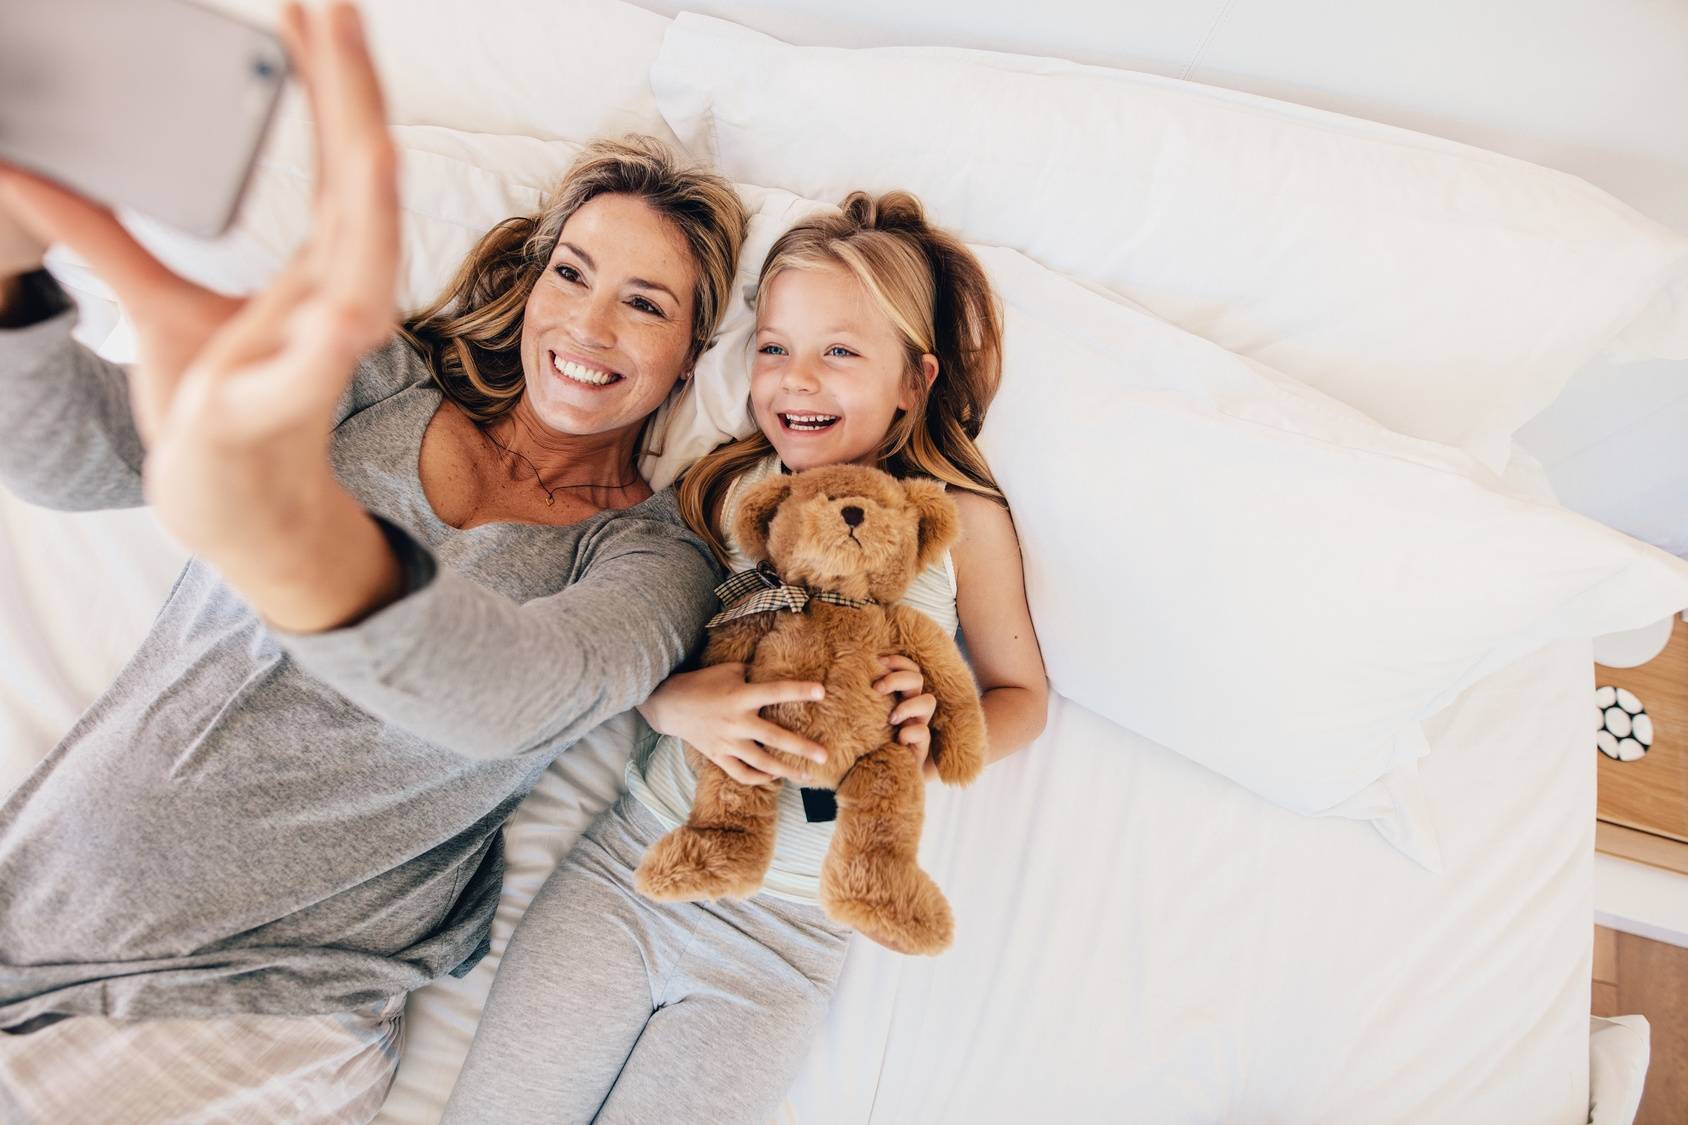 Matka i córka - jak zbudować i ułożyć sobie dobrą relację? Mama i córka przytulająca misia leżą na łóżku i robią sobie selfie.